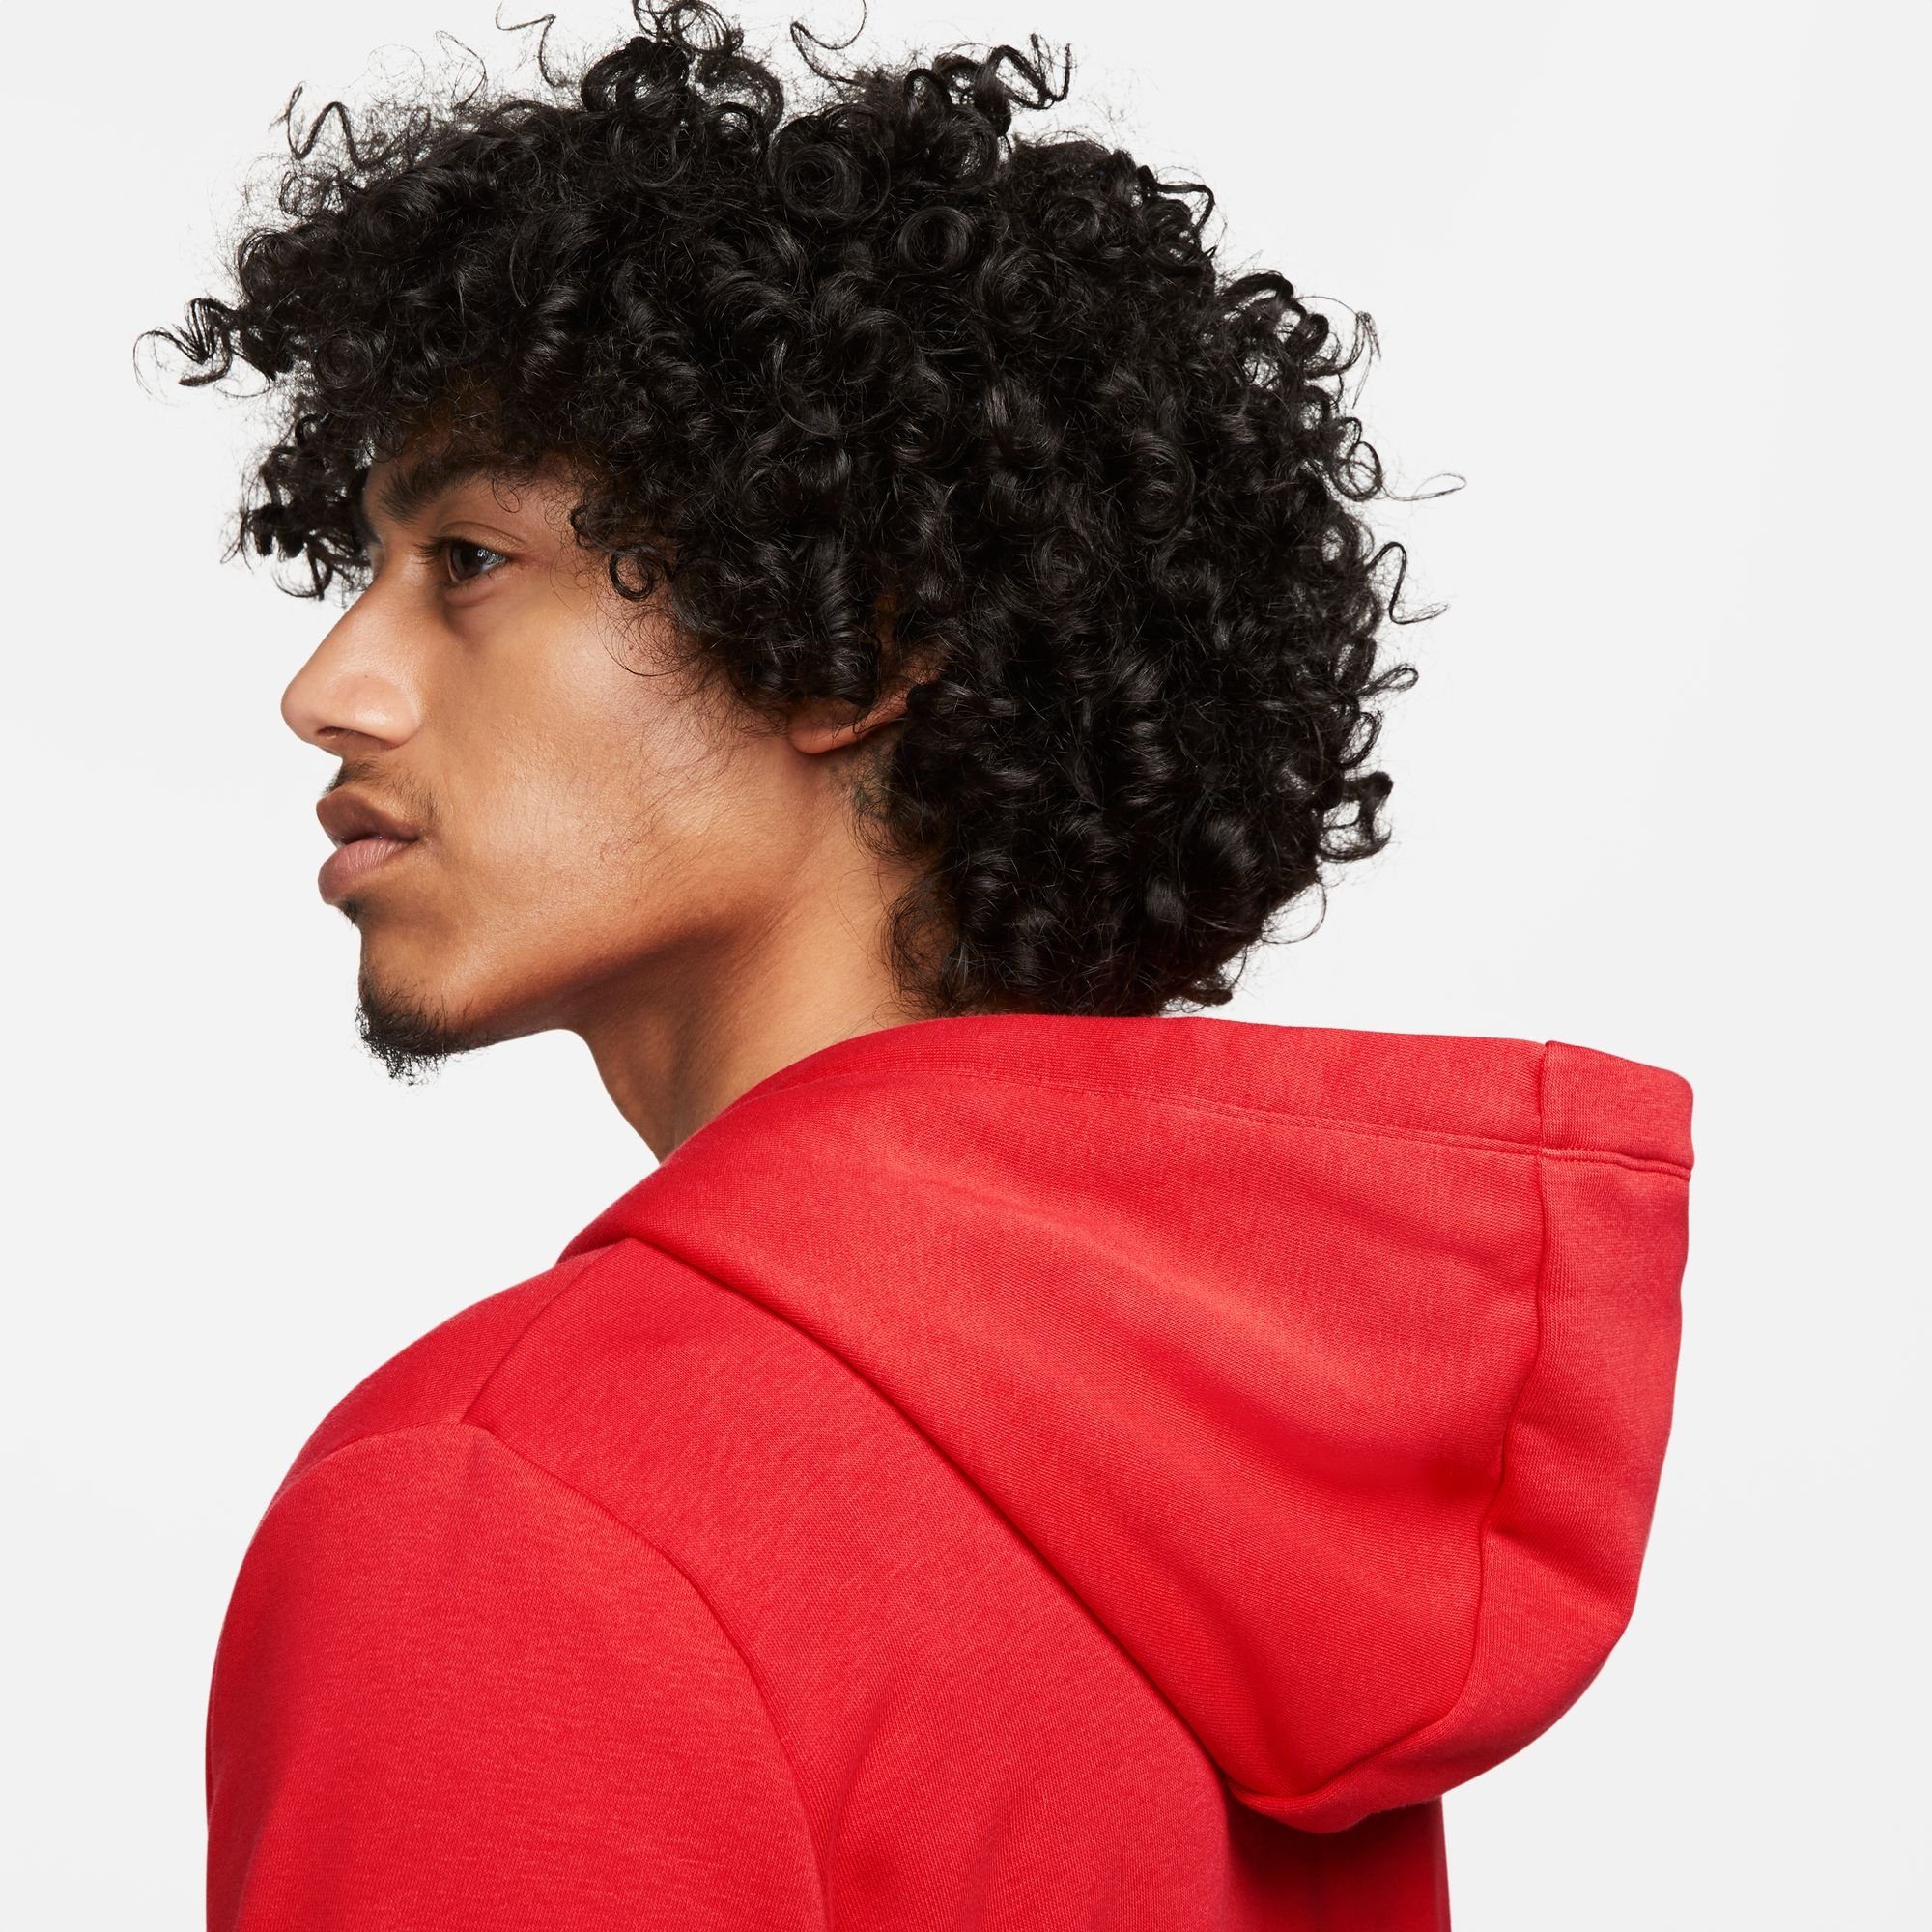 RED/WHITE Women's Club UNIVERSITY Nike Full-Zip Fleece Kapuzensweatjacke Hoodie Sportswear